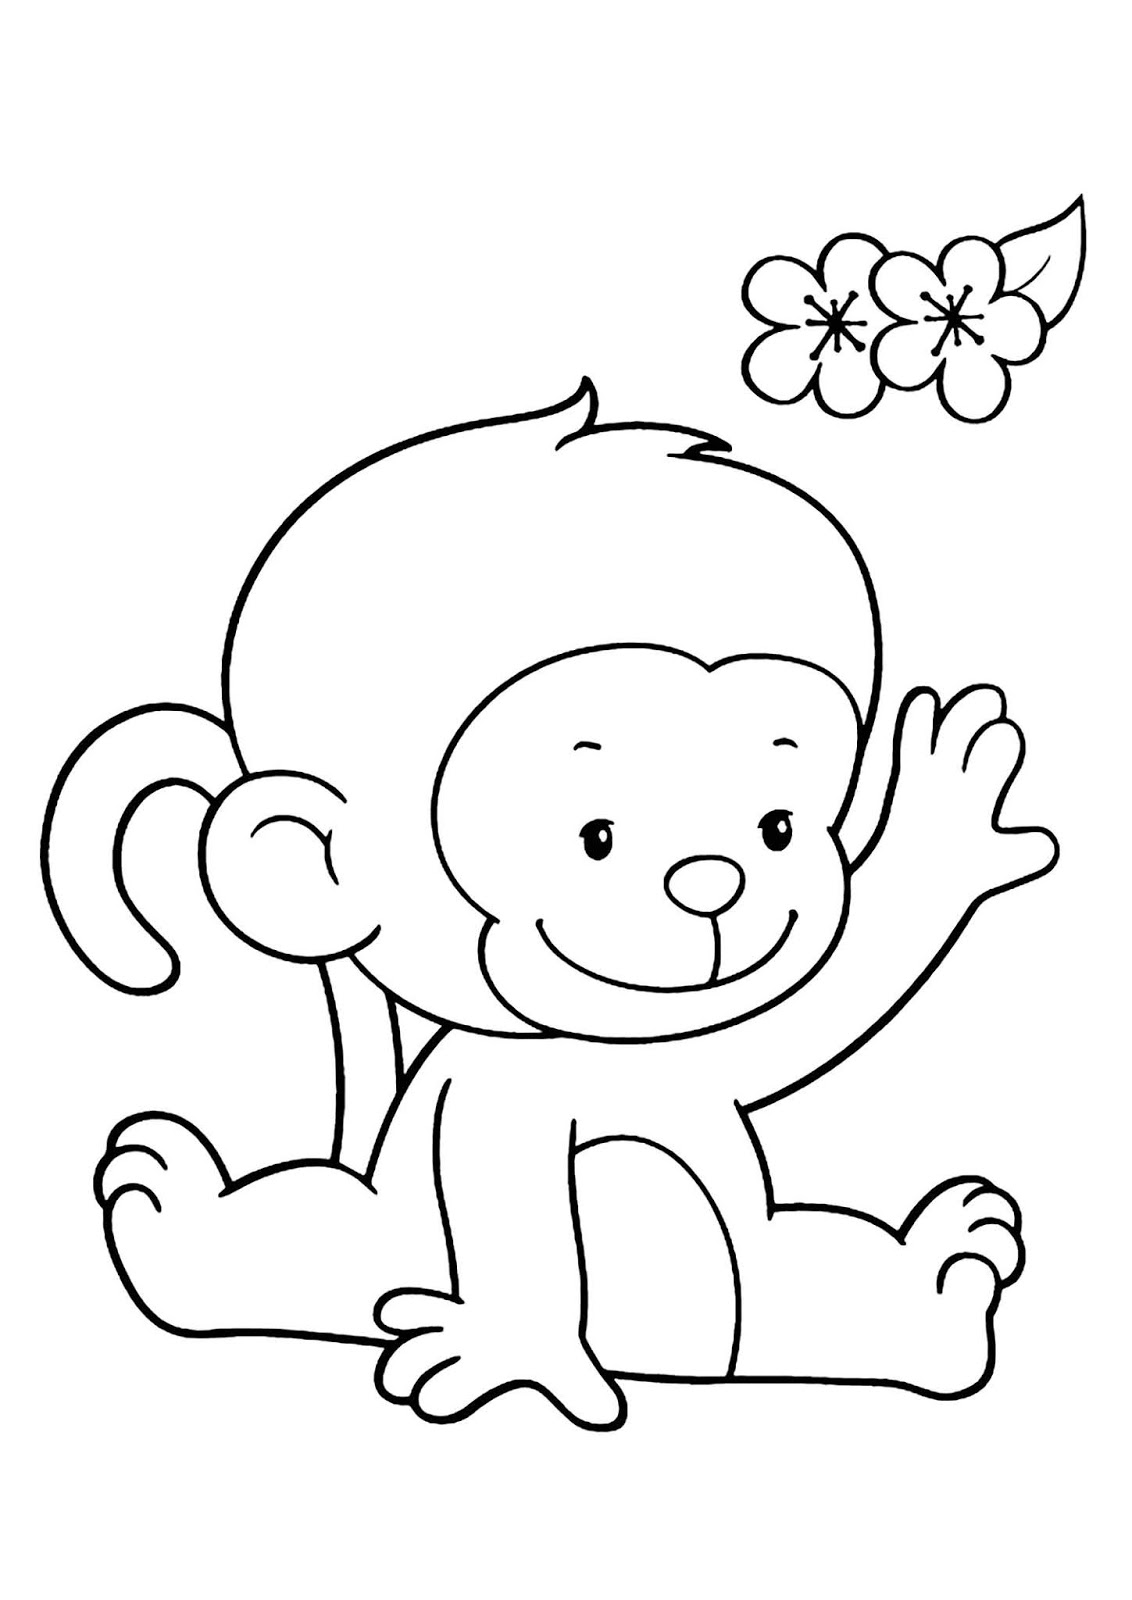 Tranh tô màu con khỉ đơn giản